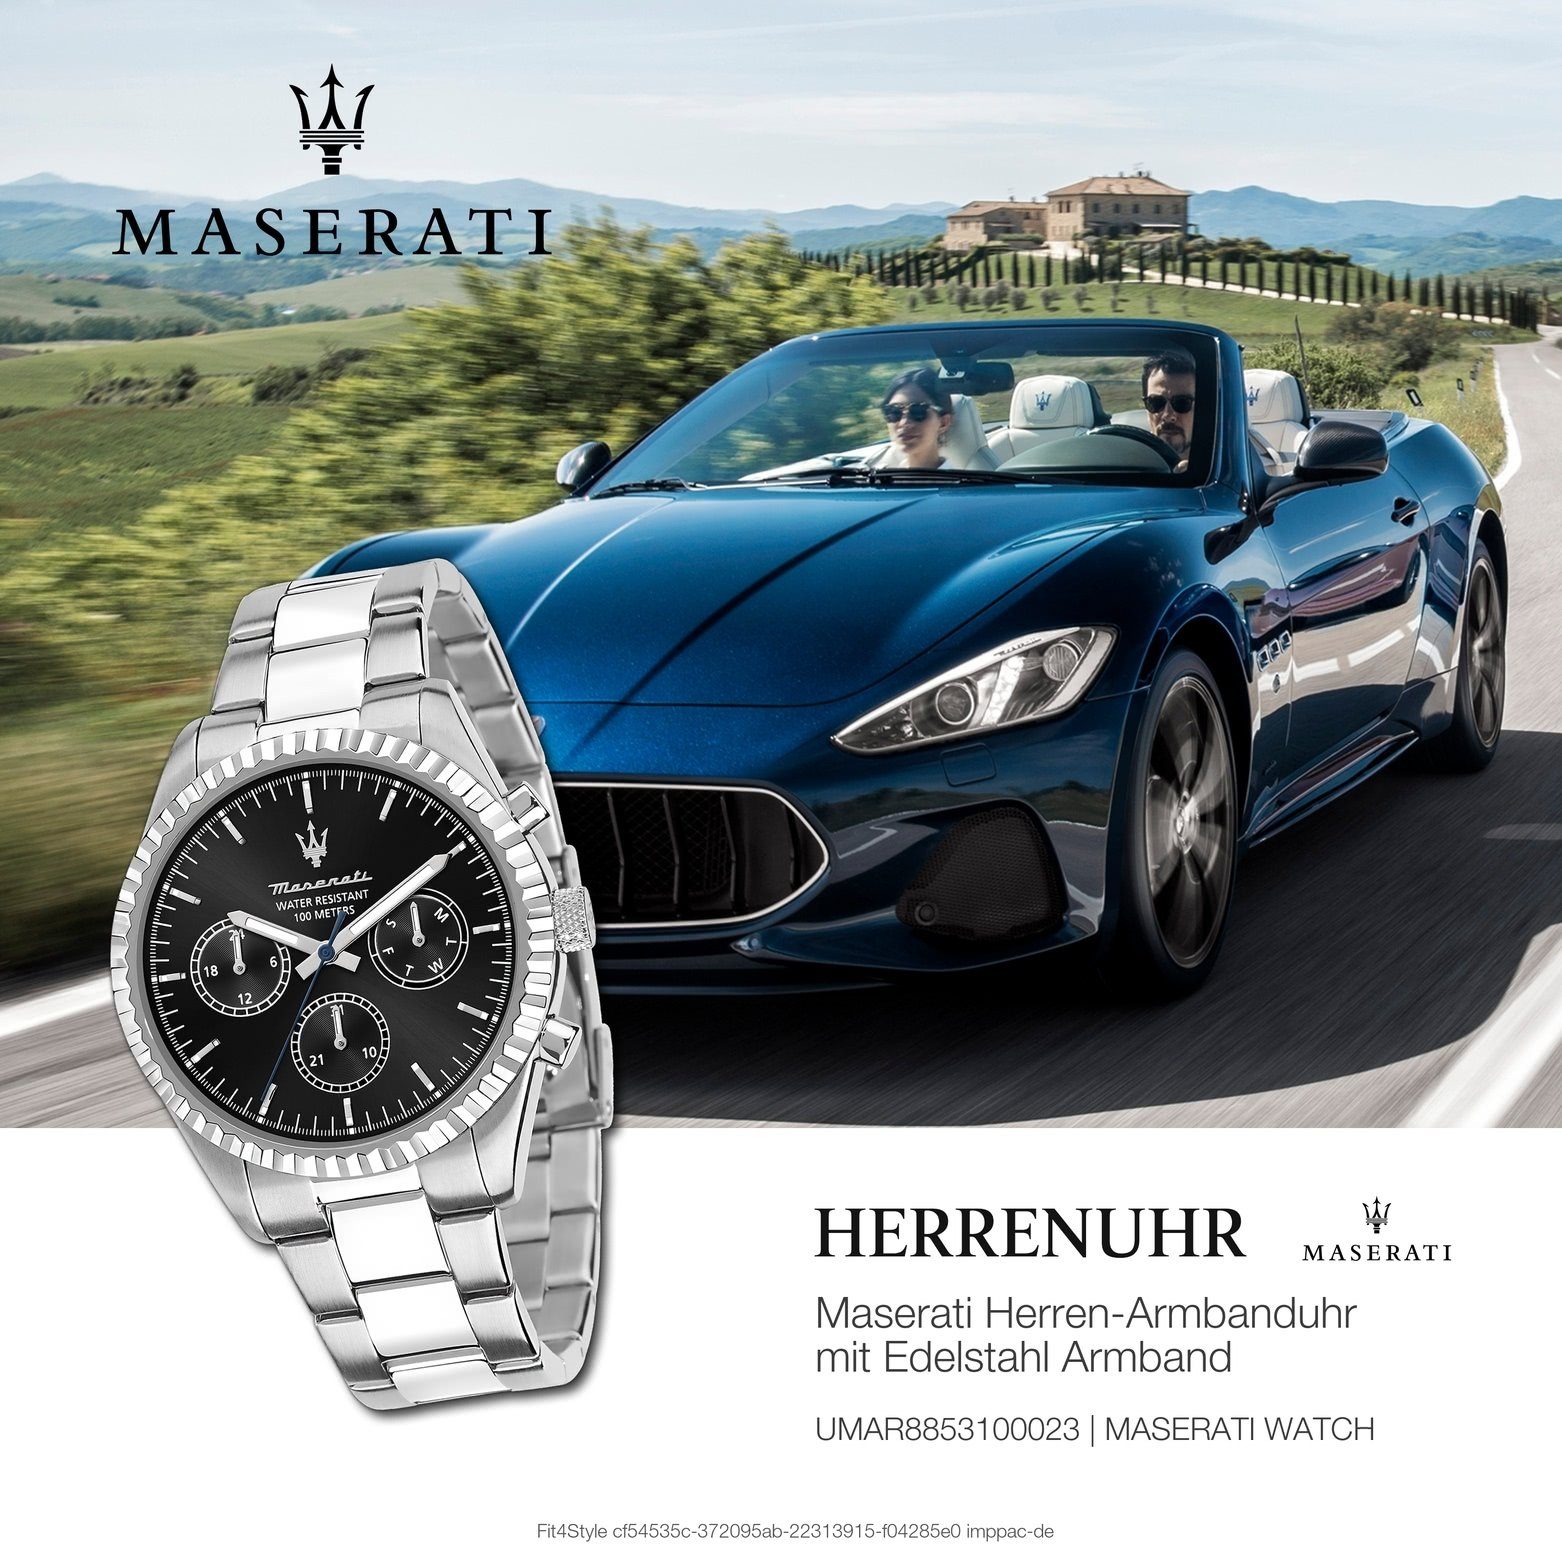 groß silber Maserati Herrenuhr Edelstahlarmband, Herrenuhr (ca. COMPETIZIONE, MASERATI 51,5x43mm) Made-In schwarz, Italy rund, Multifunktionsuhr